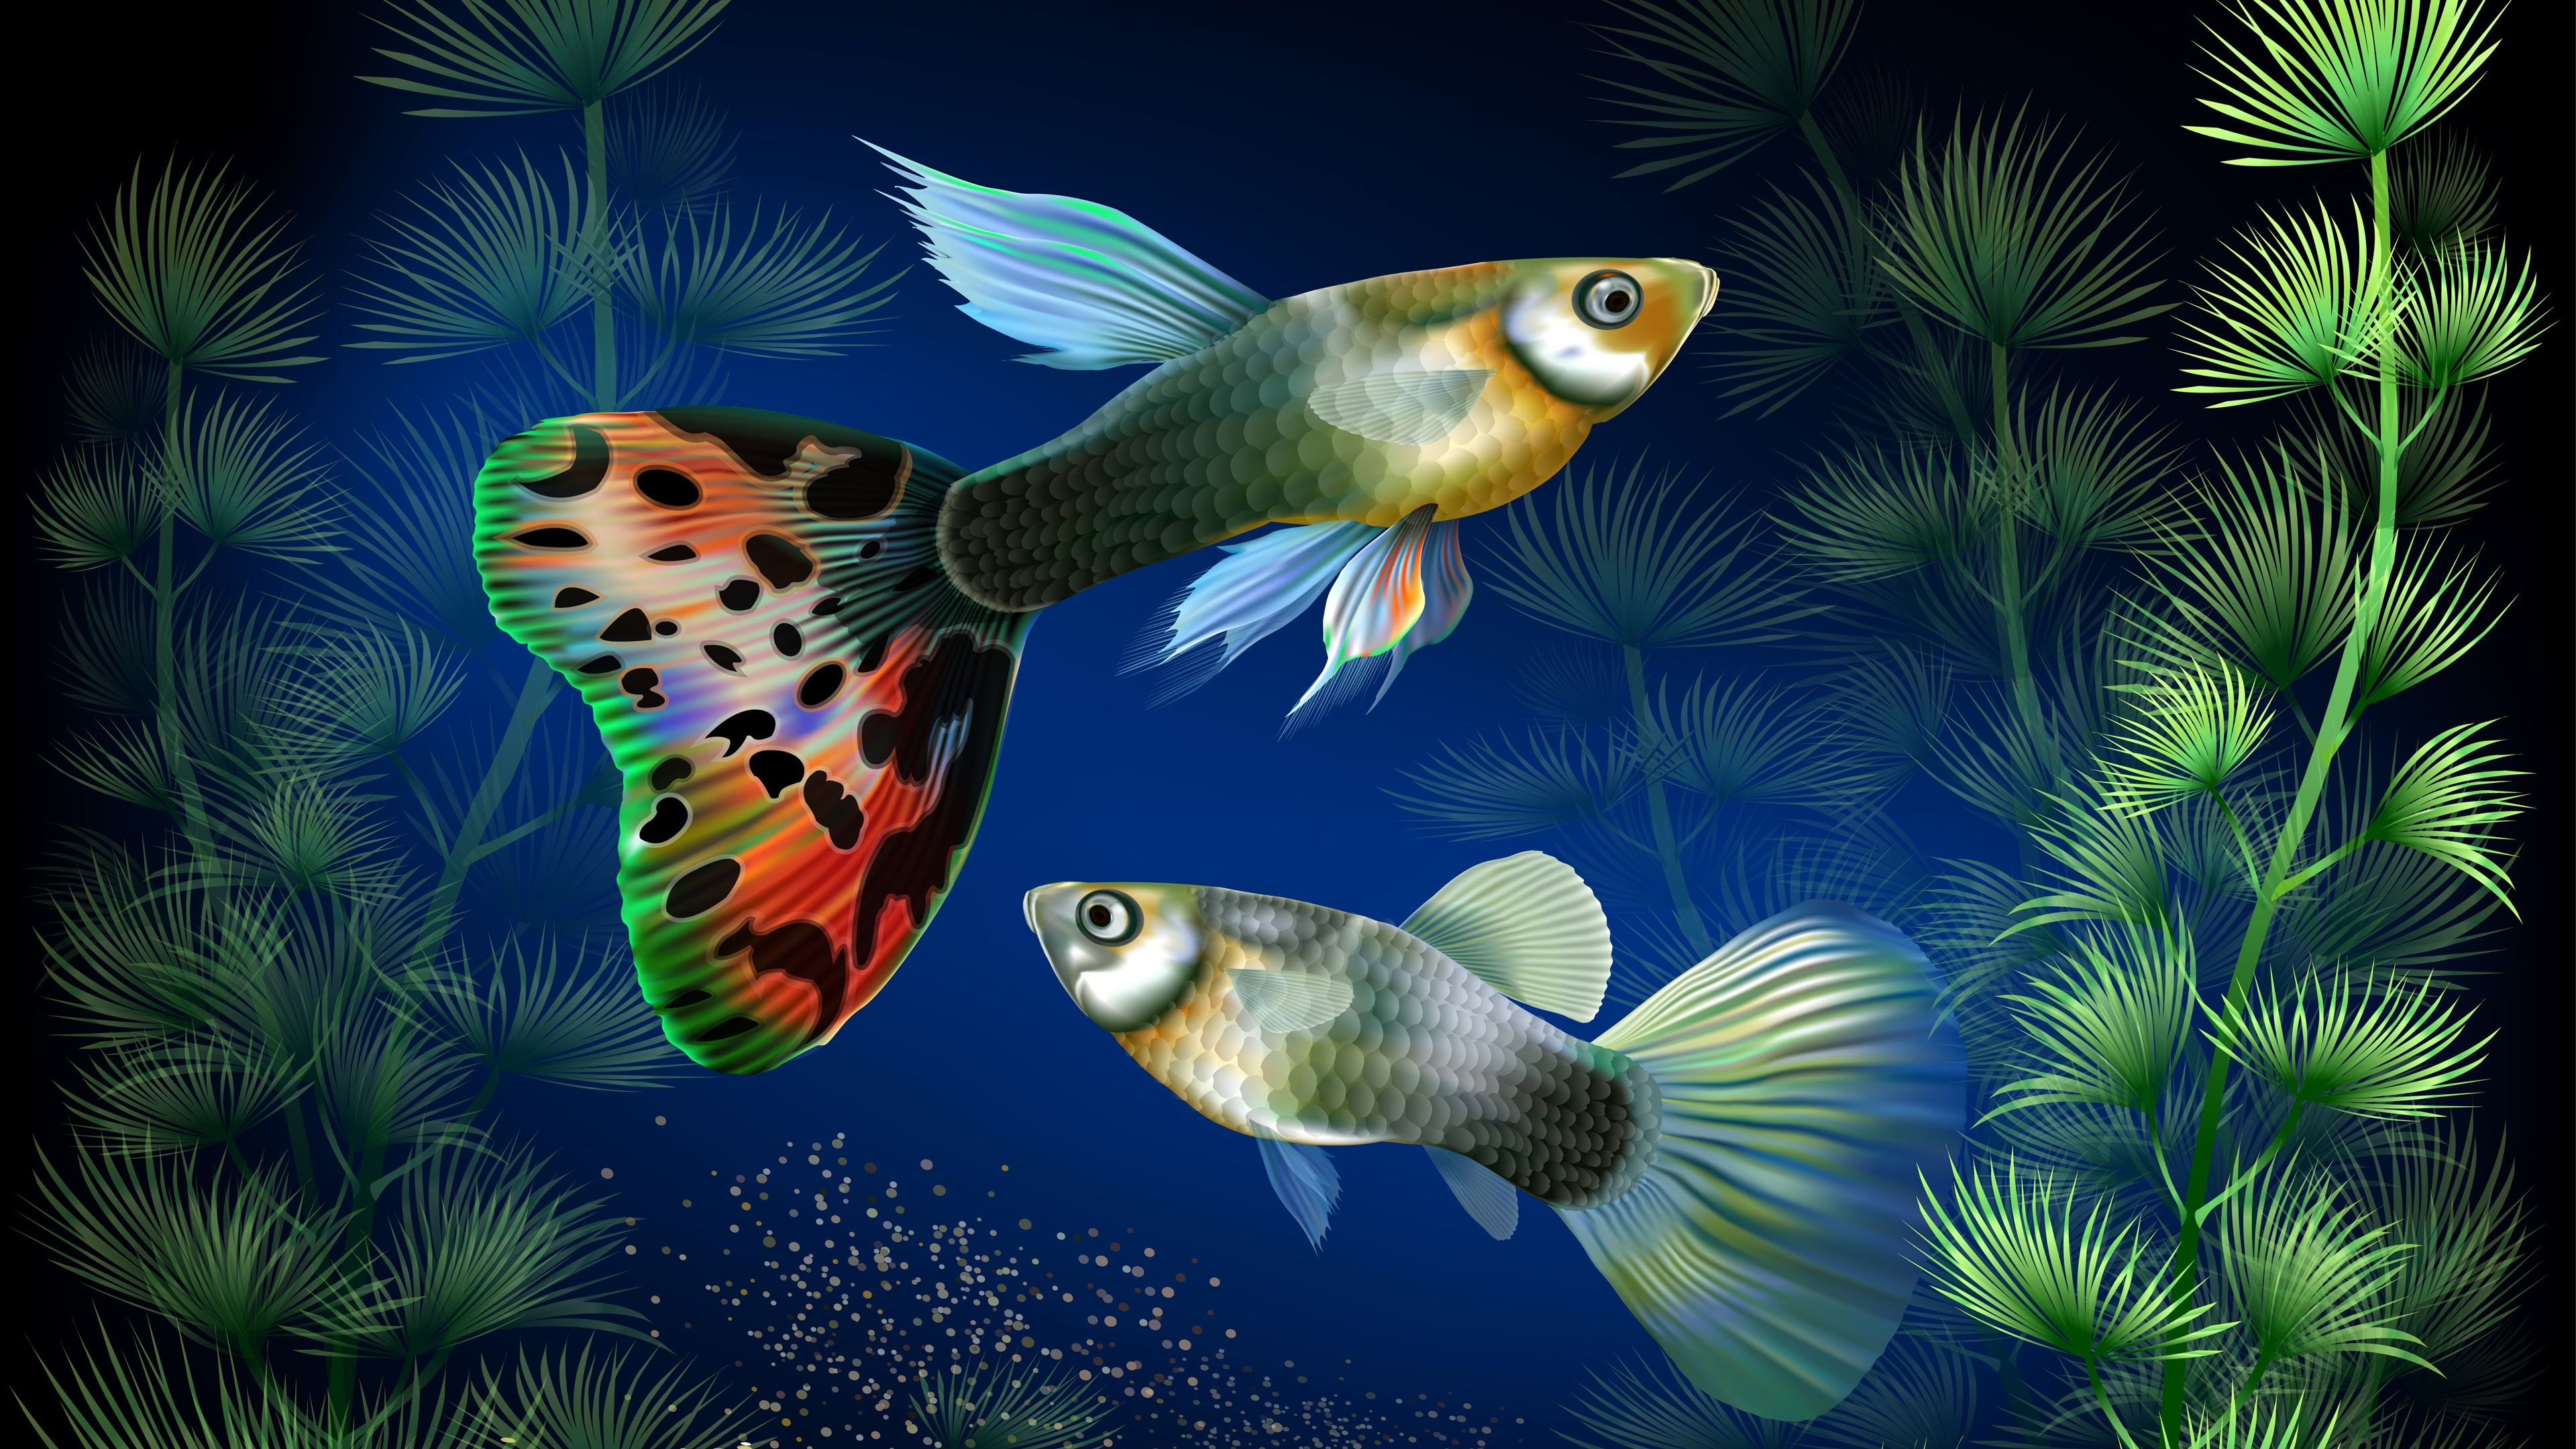  Aquarien Hintergrundbild 3840x2160. Aquarienfische bei Unterwasser-, Wasser Gras, kreatives Design 3840x2160 UHD 4K Hintergrundbilder, HD, Bild